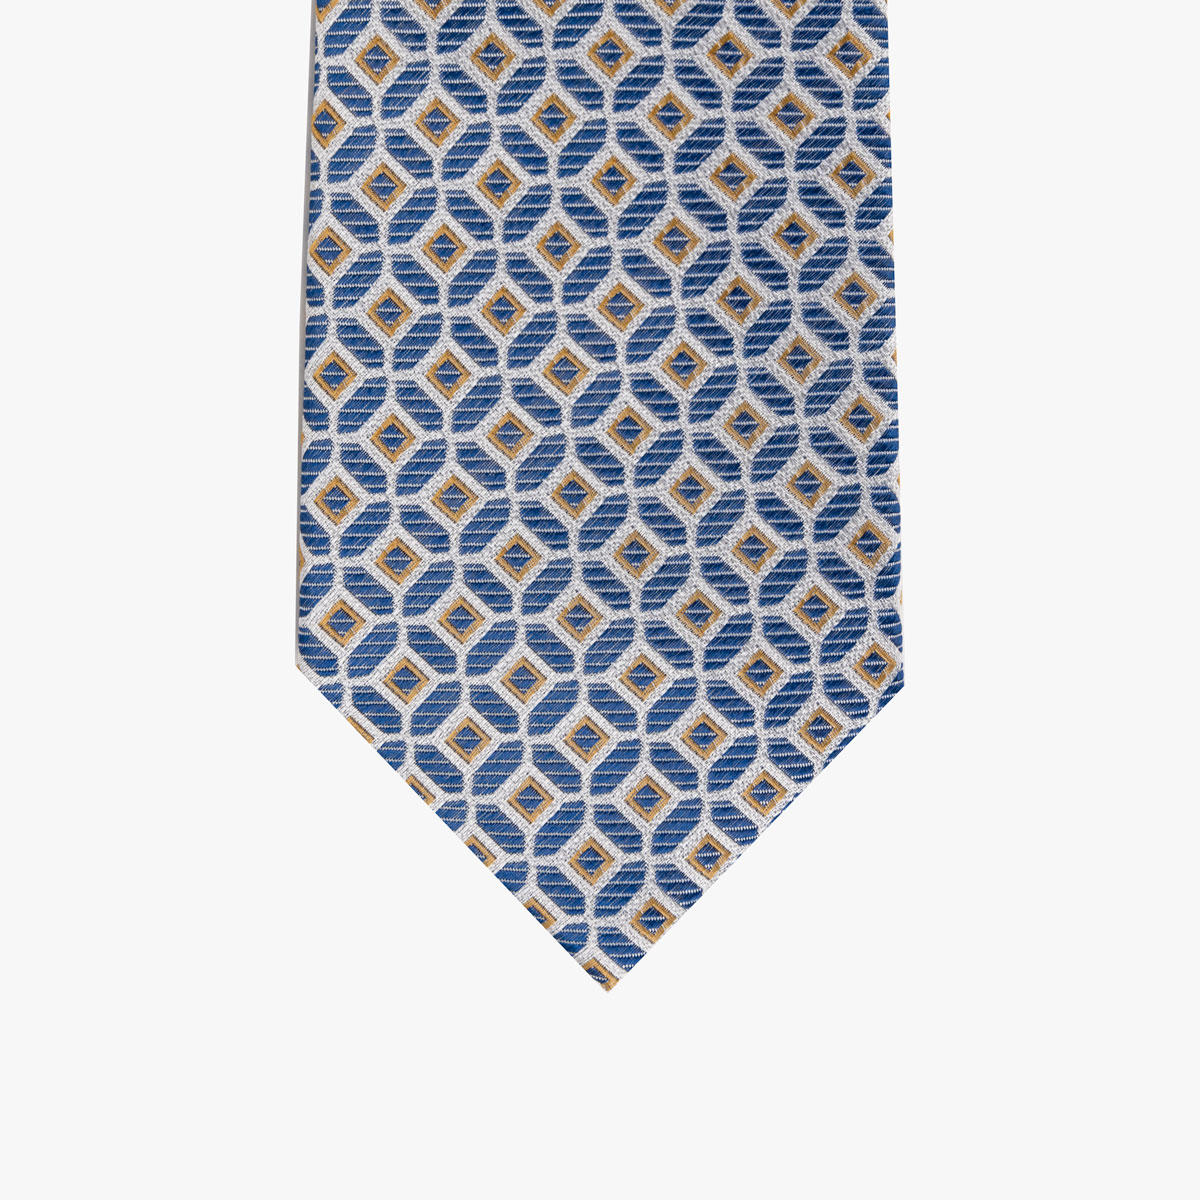 Krawatte mit geometrischem Muster in blau gold